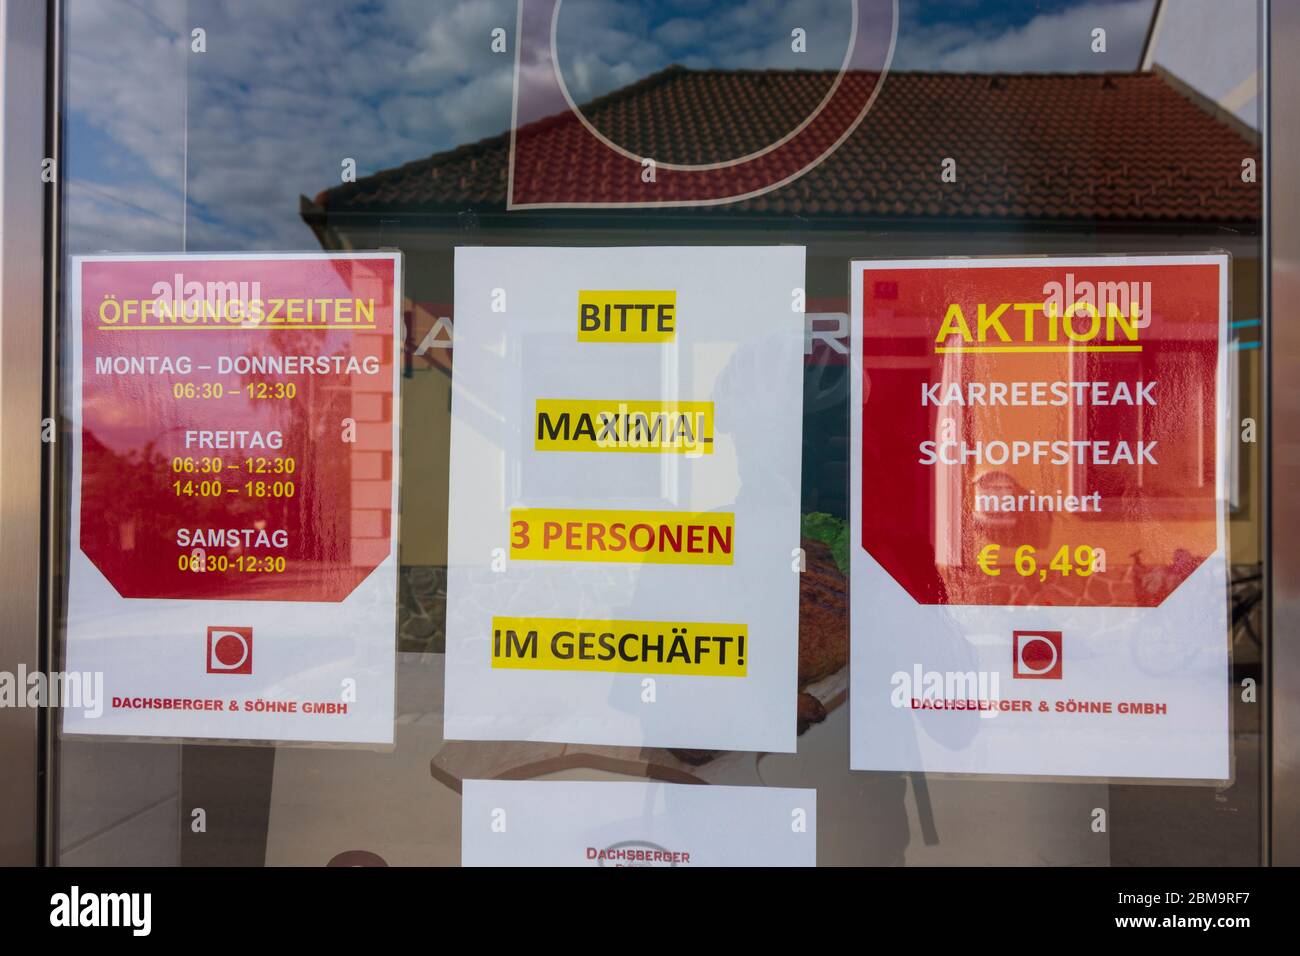 Maissau: sign at Butcher's 'Bitte maximal 3 Personen im Geschäft', Corona virus time, in Weinviertel, Niederösterreich, Lower Austria, Austria Stock Photo